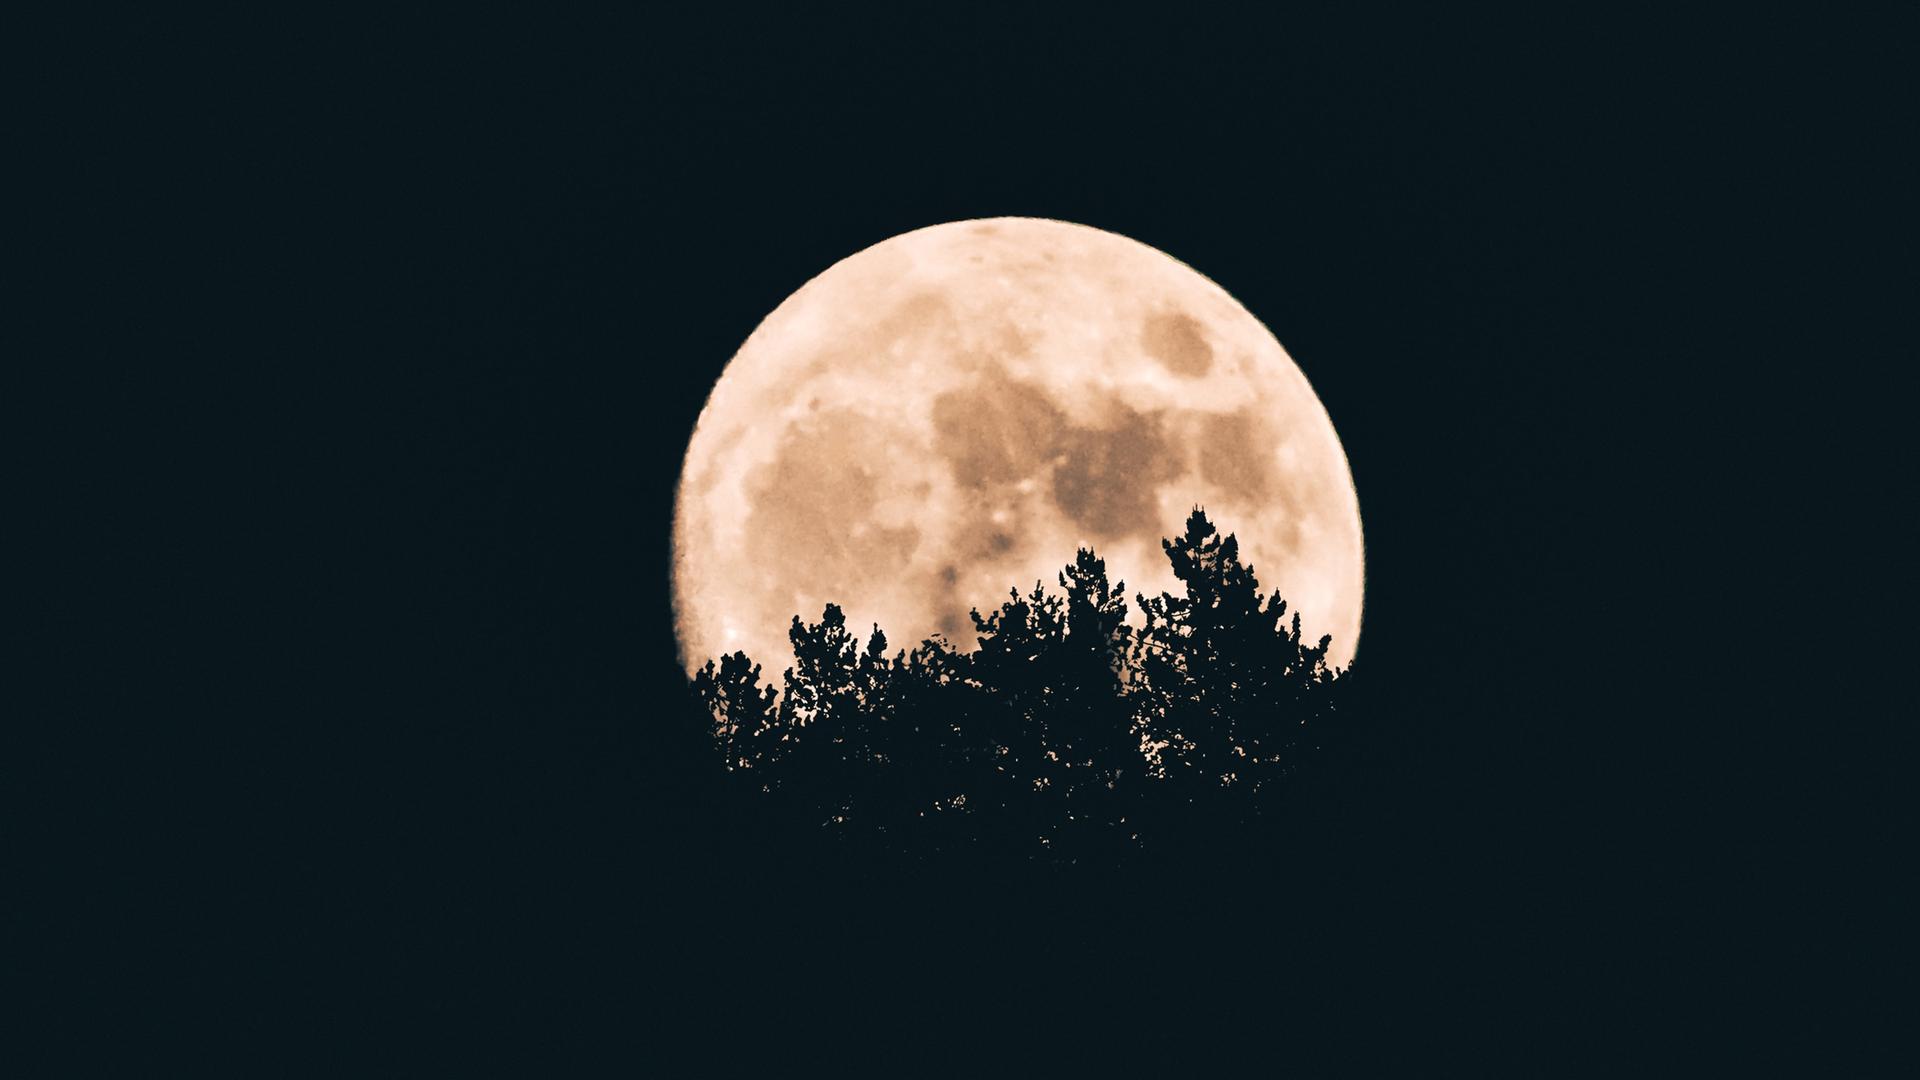 Ein großer Vollmond steht hinter Wipfeln von Laubbäumen, die sich als dunkle Schatten am Mond abheben.